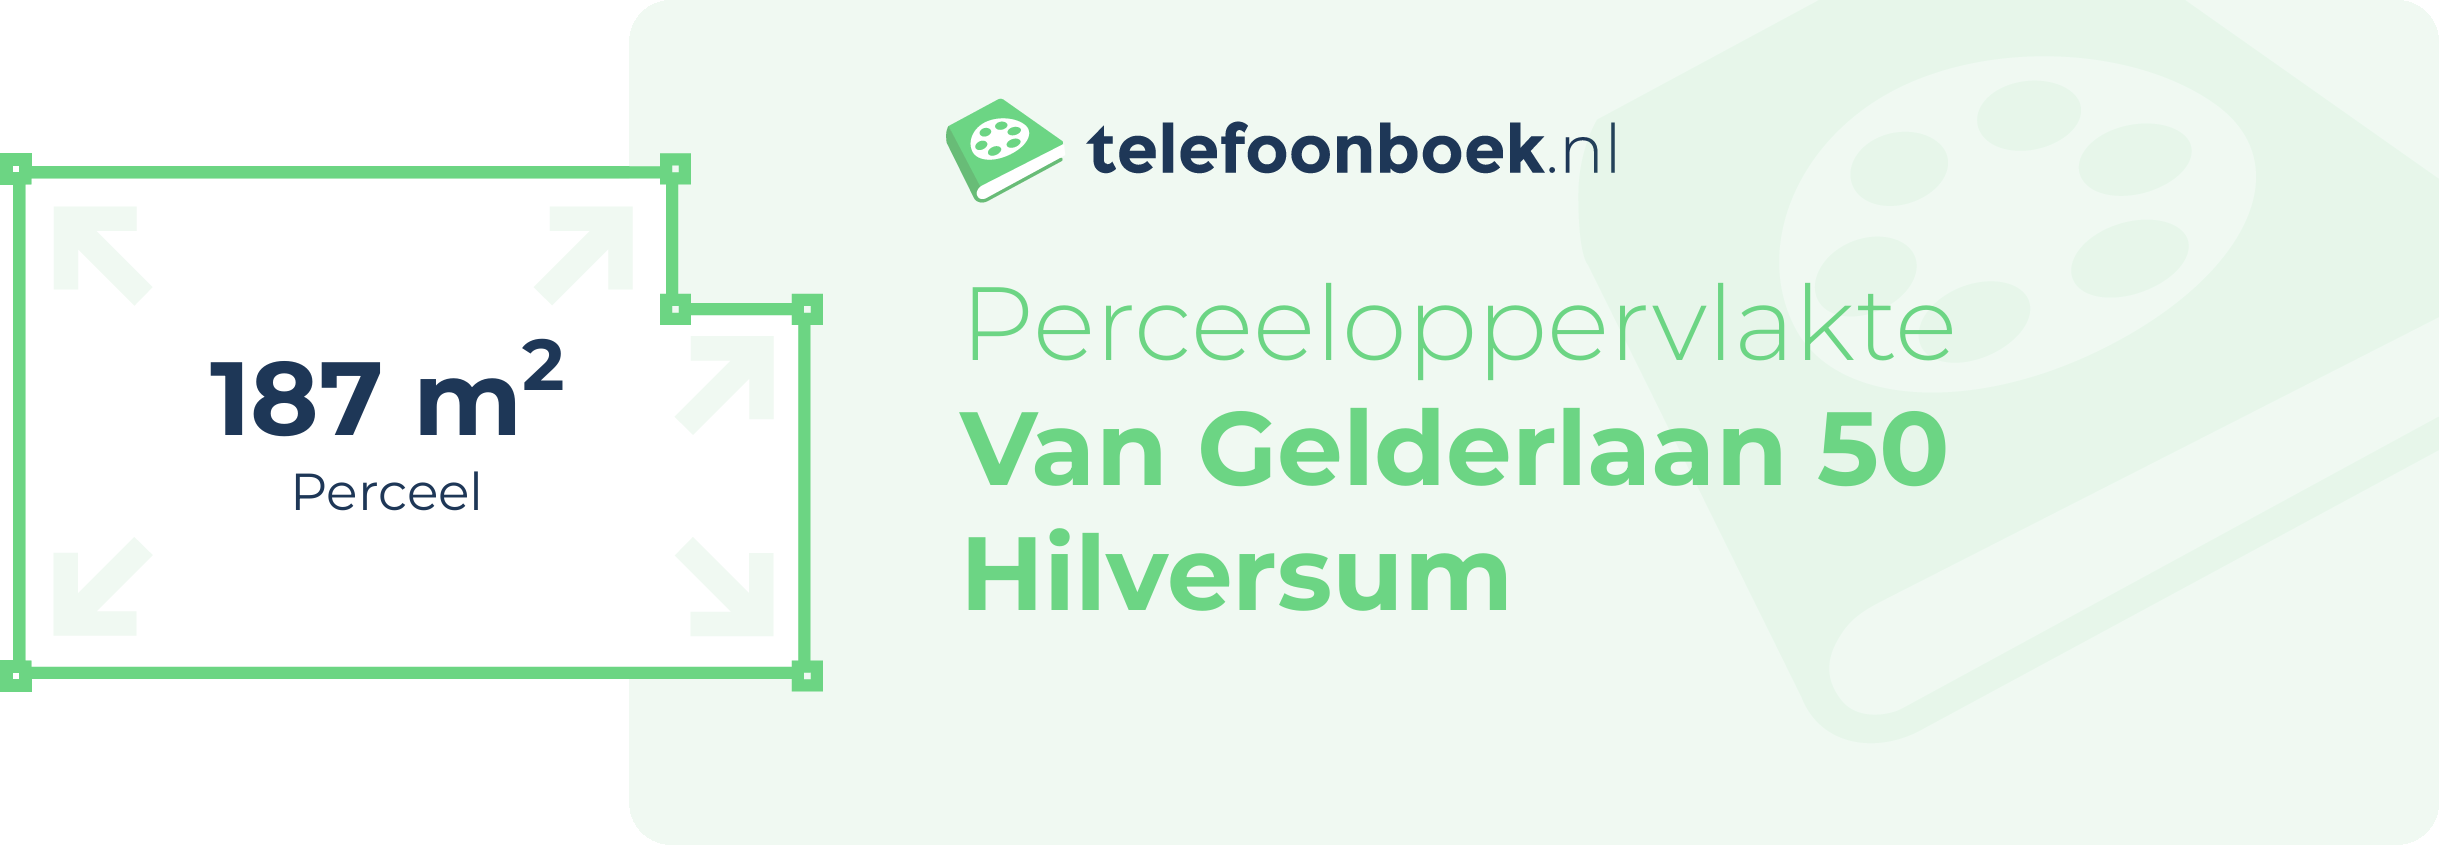 Perceeloppervlakte Van Gelderlaan 50 Hilversum